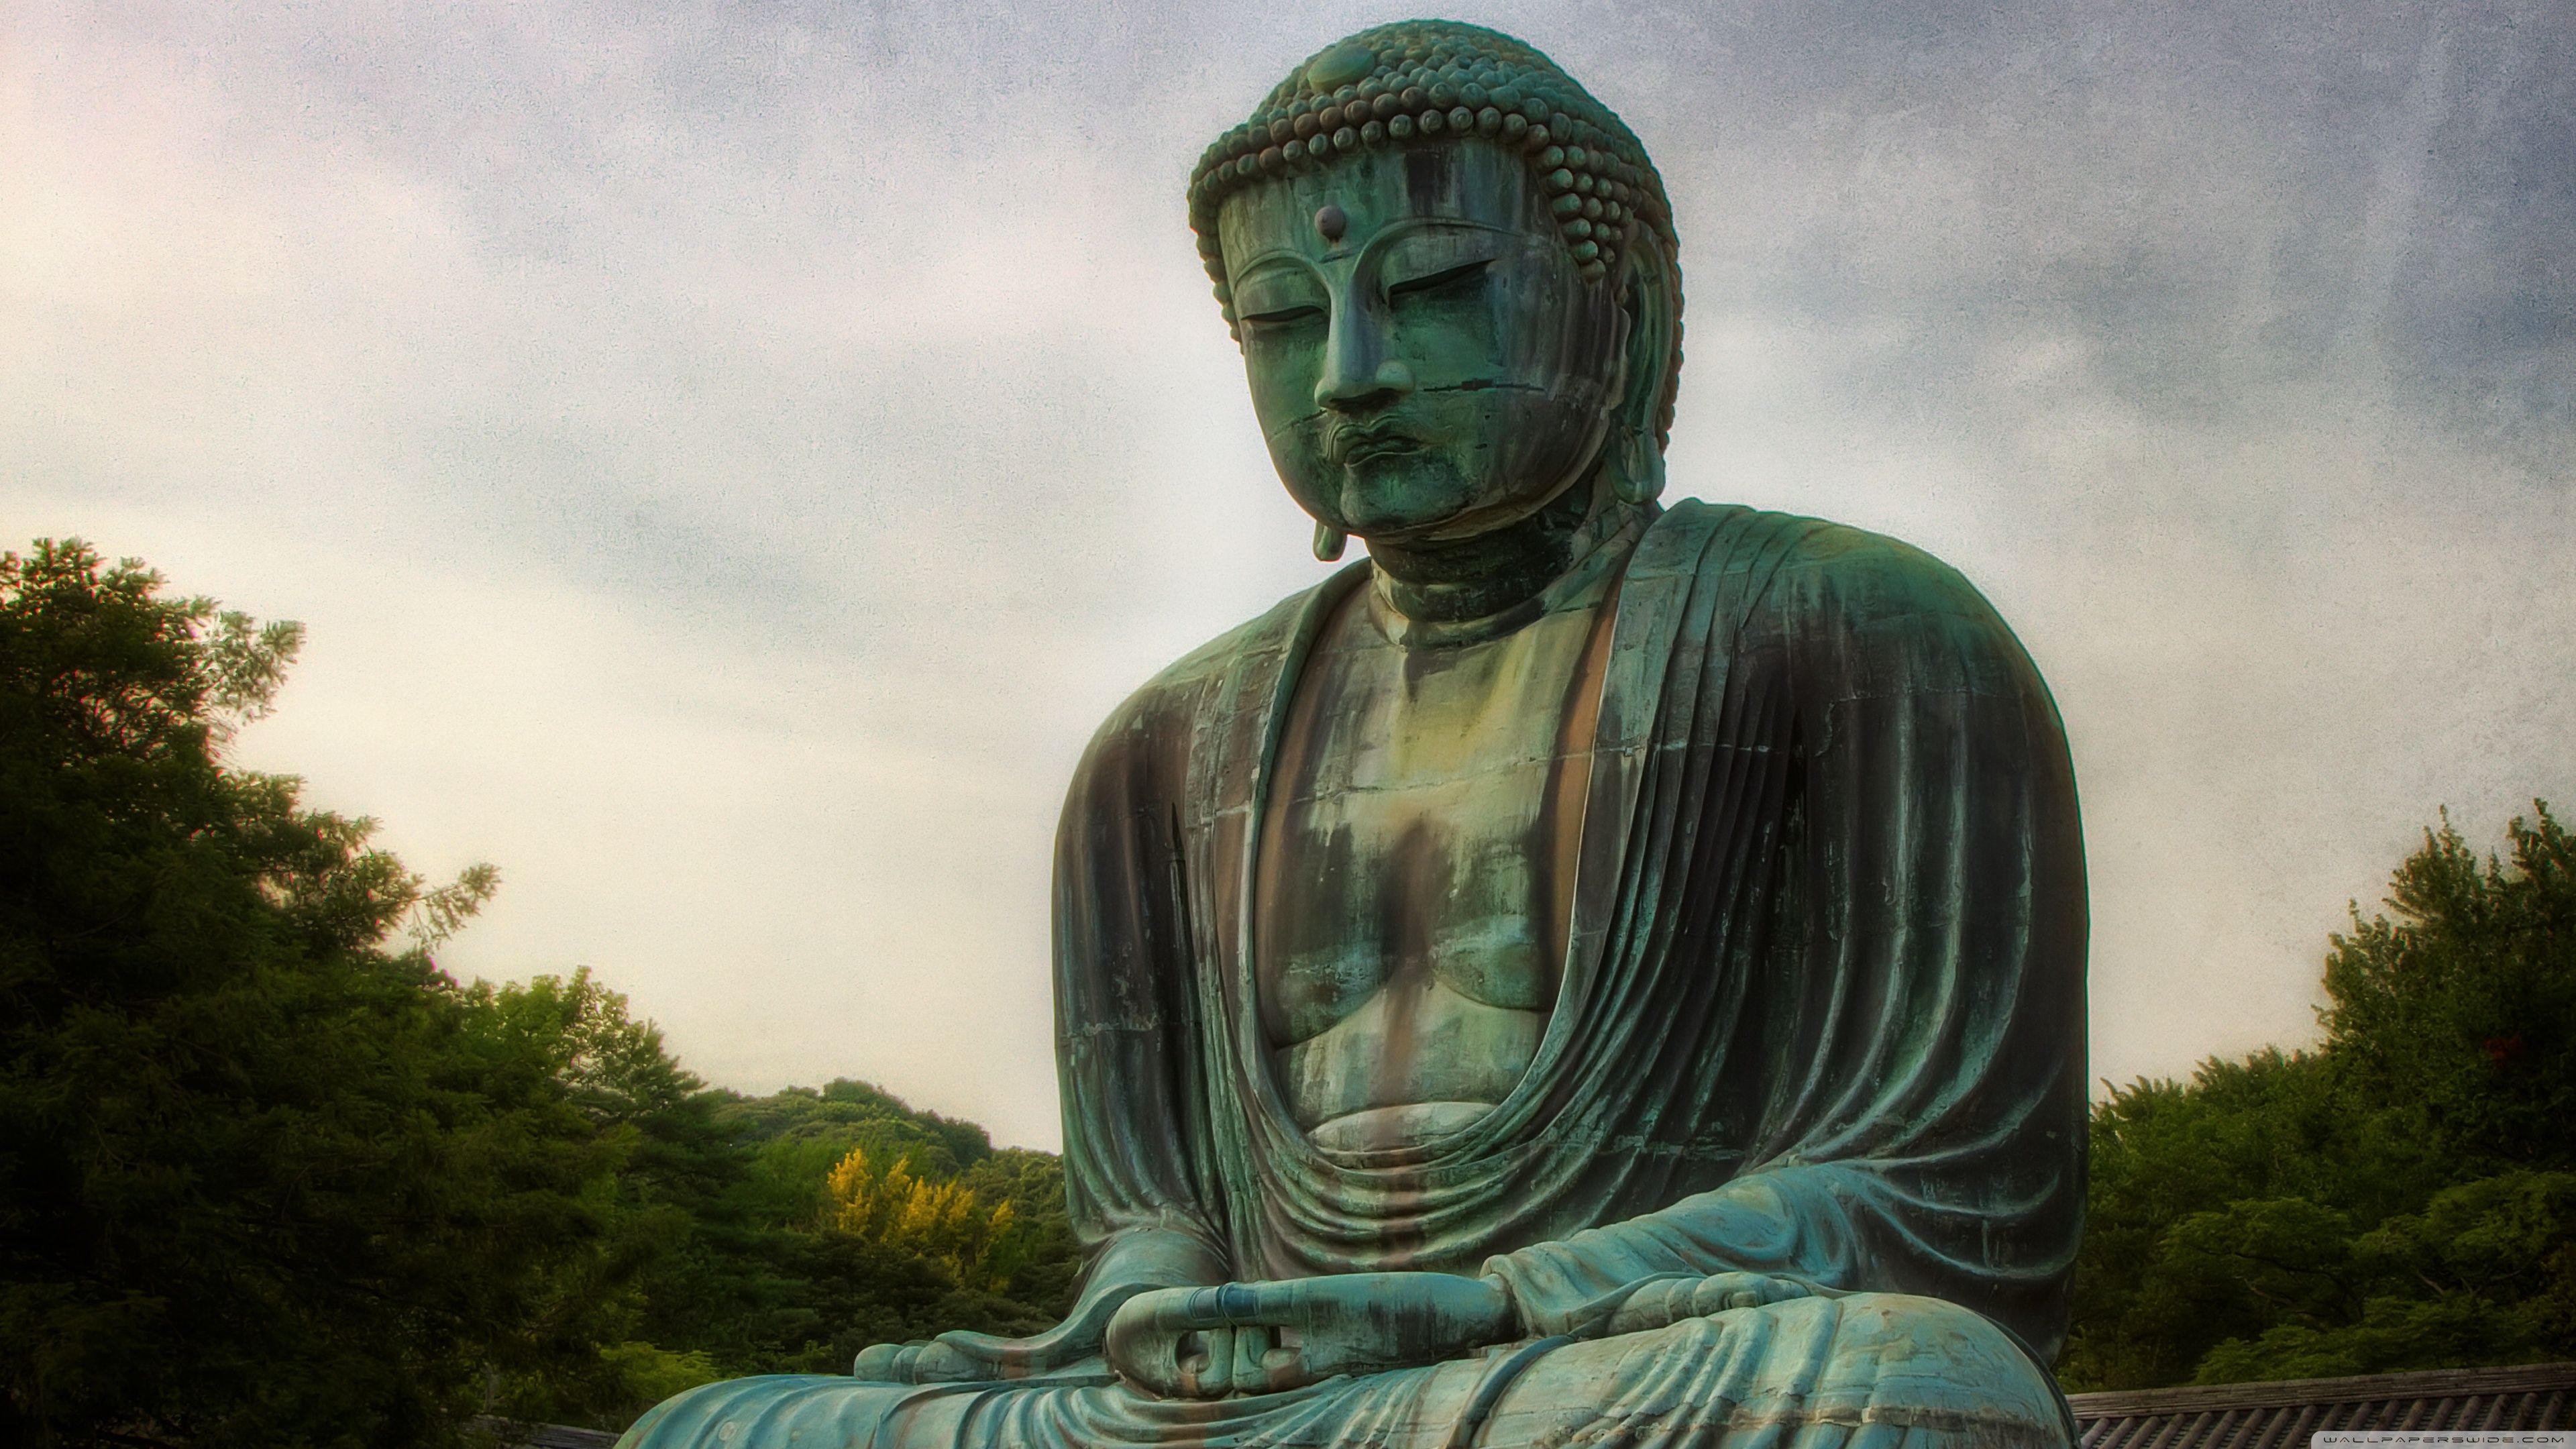 عکس زیبا از تصویر عظیم ترین مجسمه بودا با منظره جذاب و دیدنی